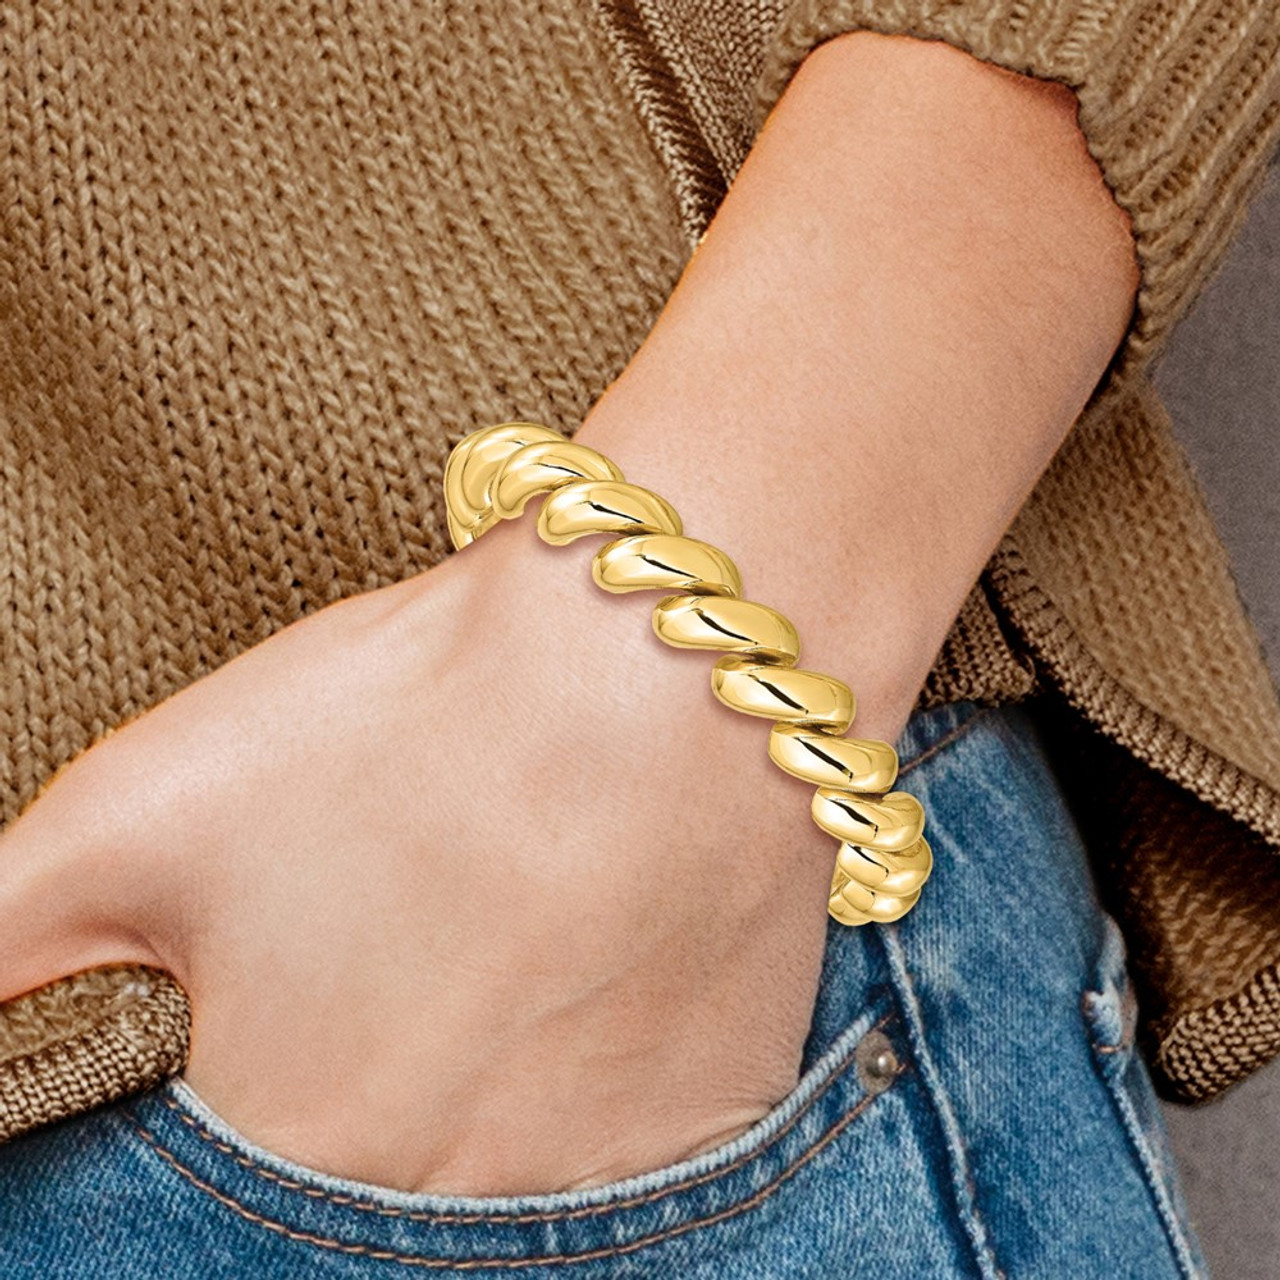 San Marco Chain Bracelet 14K Yellow Gold 7